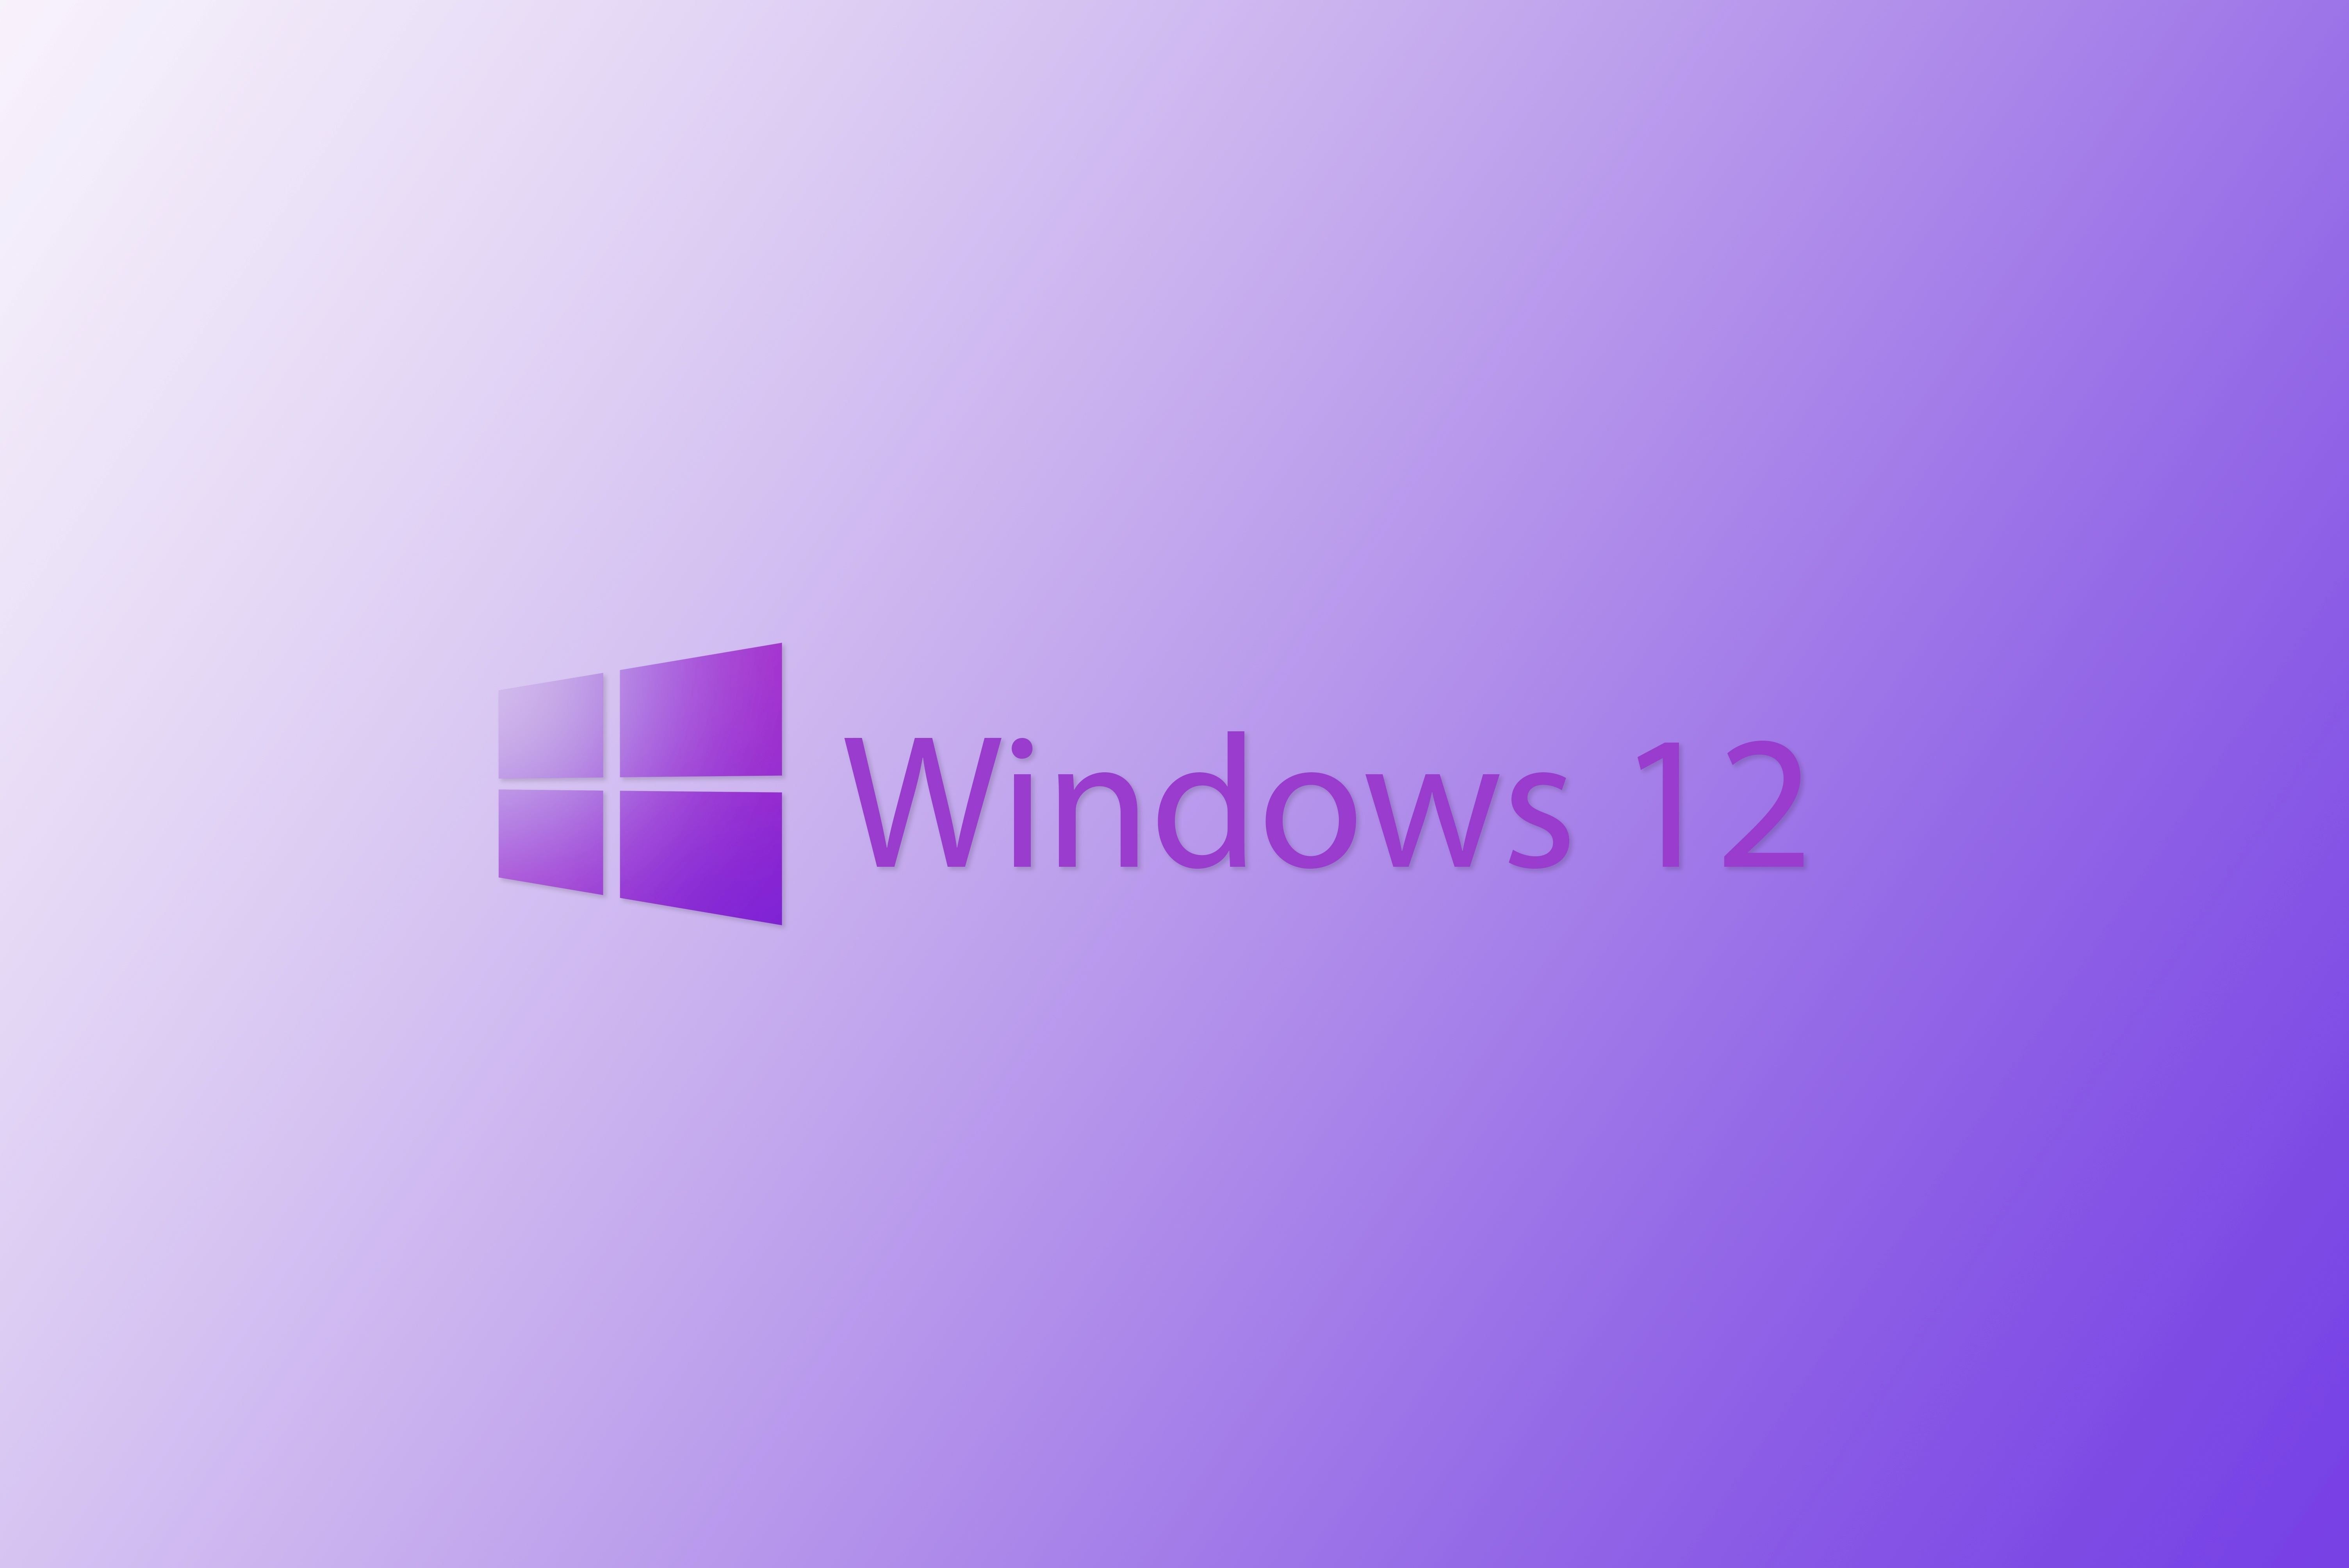 Rengeteg Windows-felhasználó a 11-es rendszerrel sem ismerkedett még meg